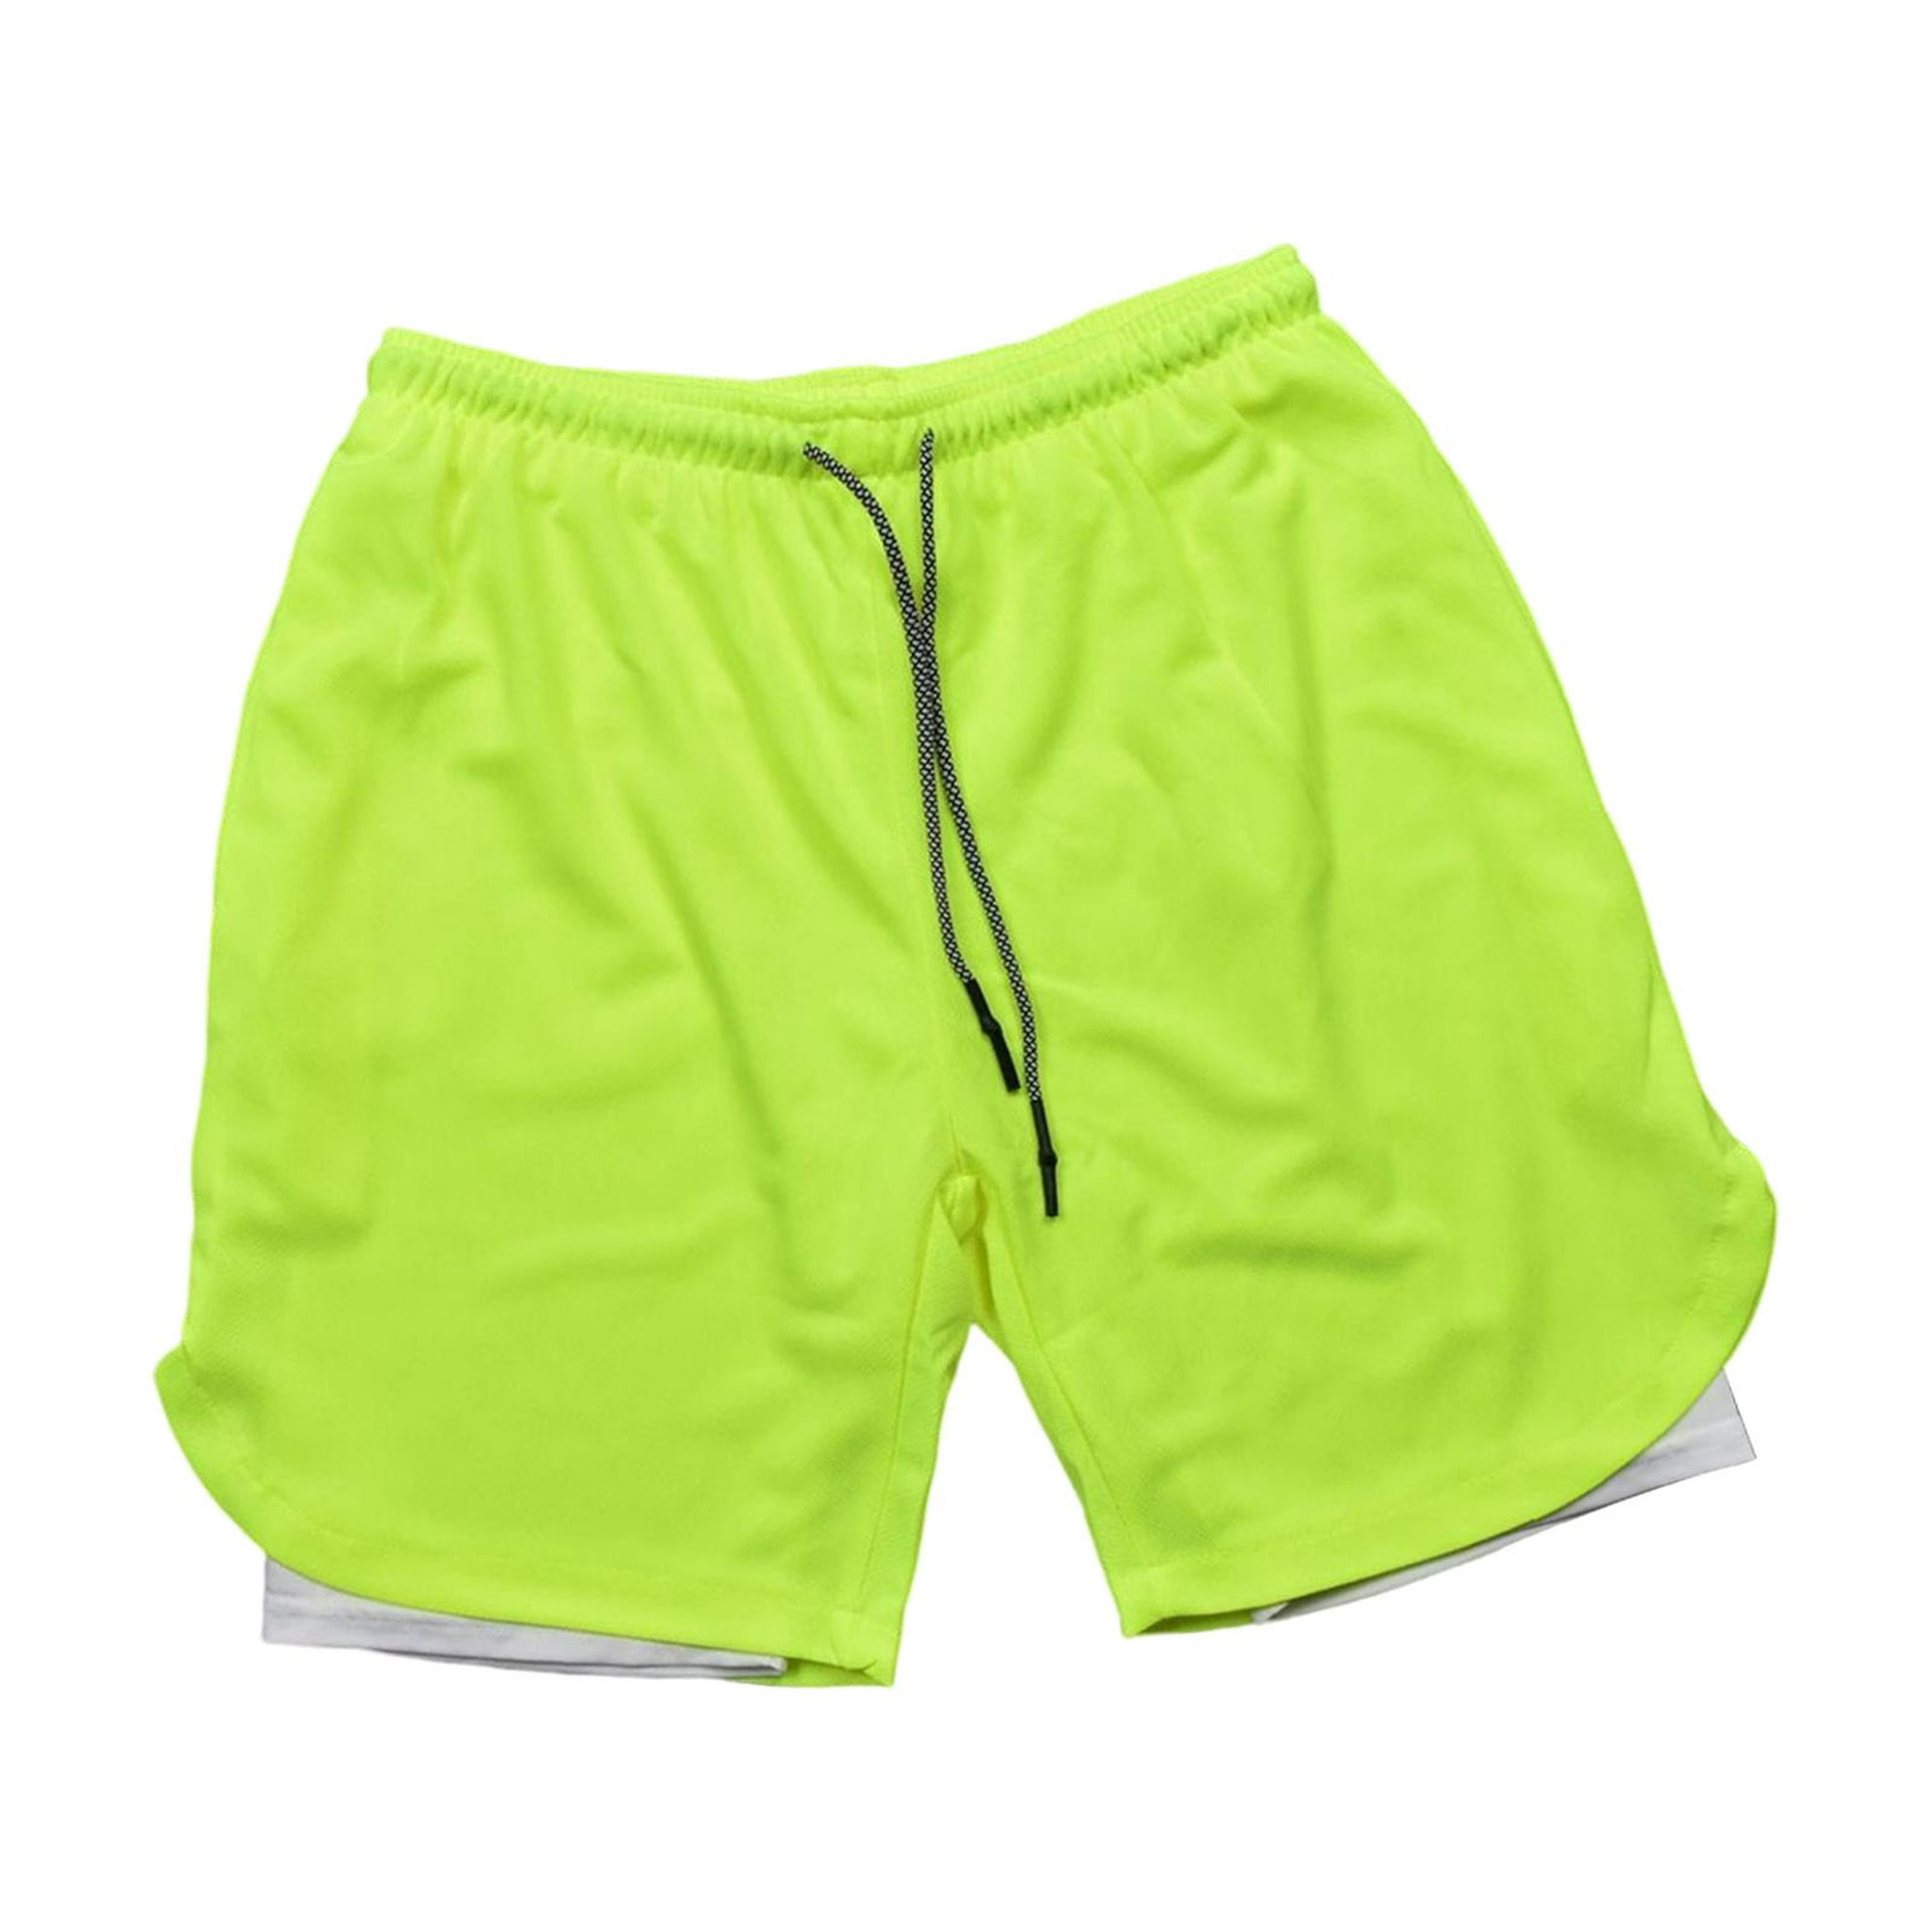 Pantalones cortos de entrenamiento para hombre, pantalones cortos  deportivos de entrenamiento ligero DYNWAVEMX Shorts deportivos para hombres